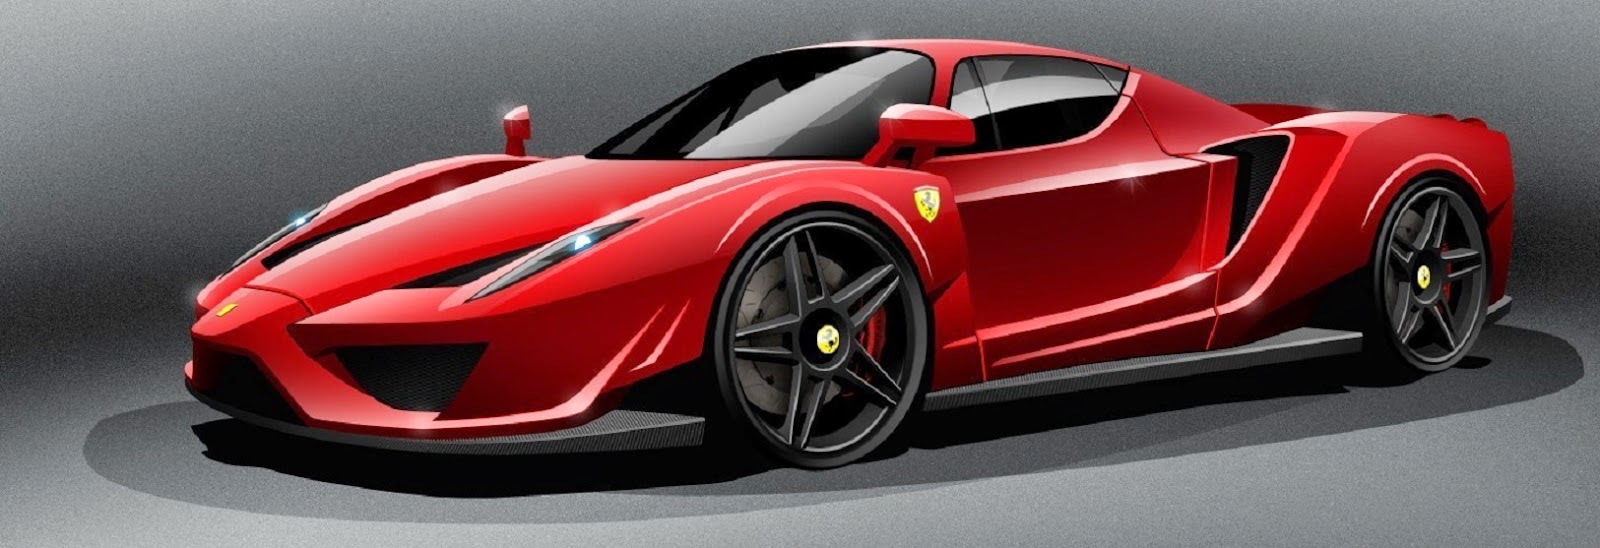  Daftar  Harga  Mobil  Ferrari  Terbaru